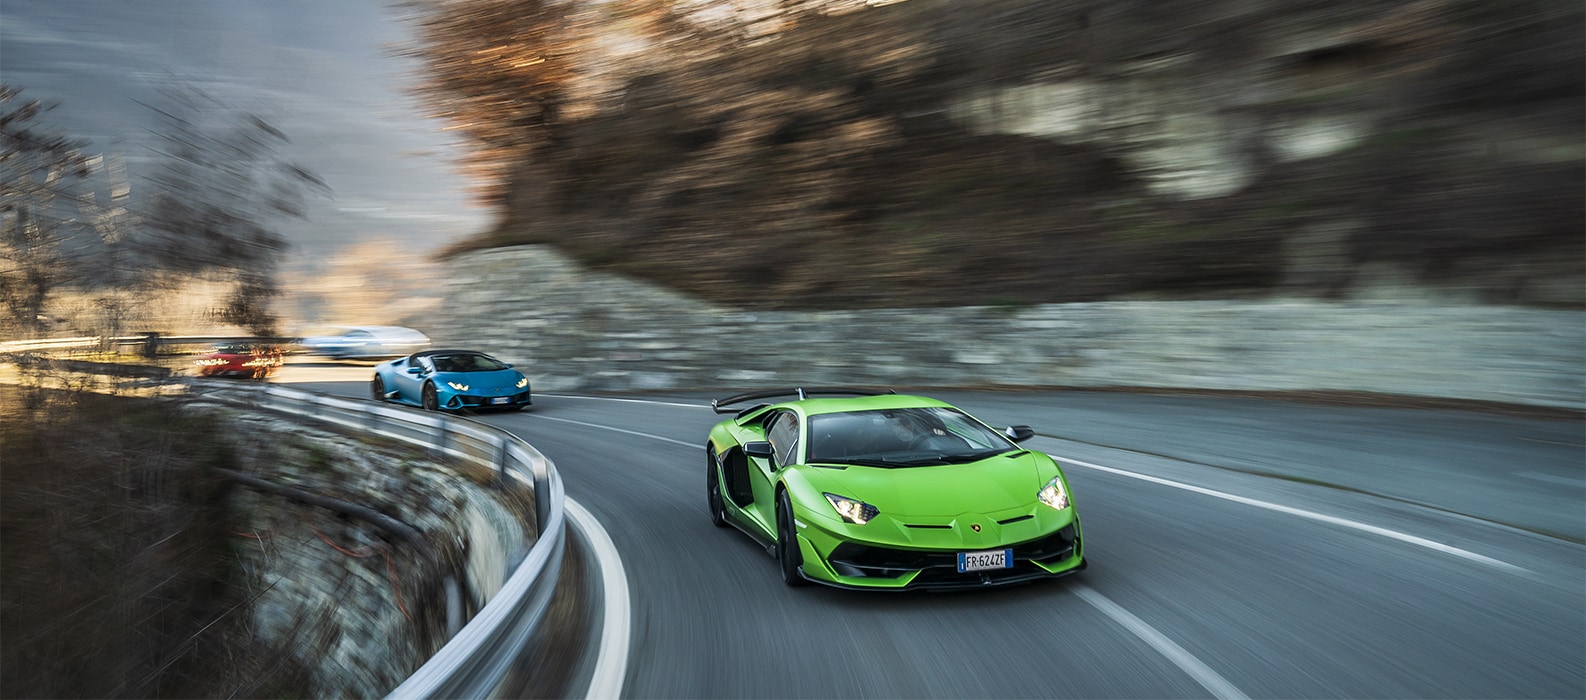 Lamborghini Huracán und Ursus beeindrucken beim Winter-Drive – Die